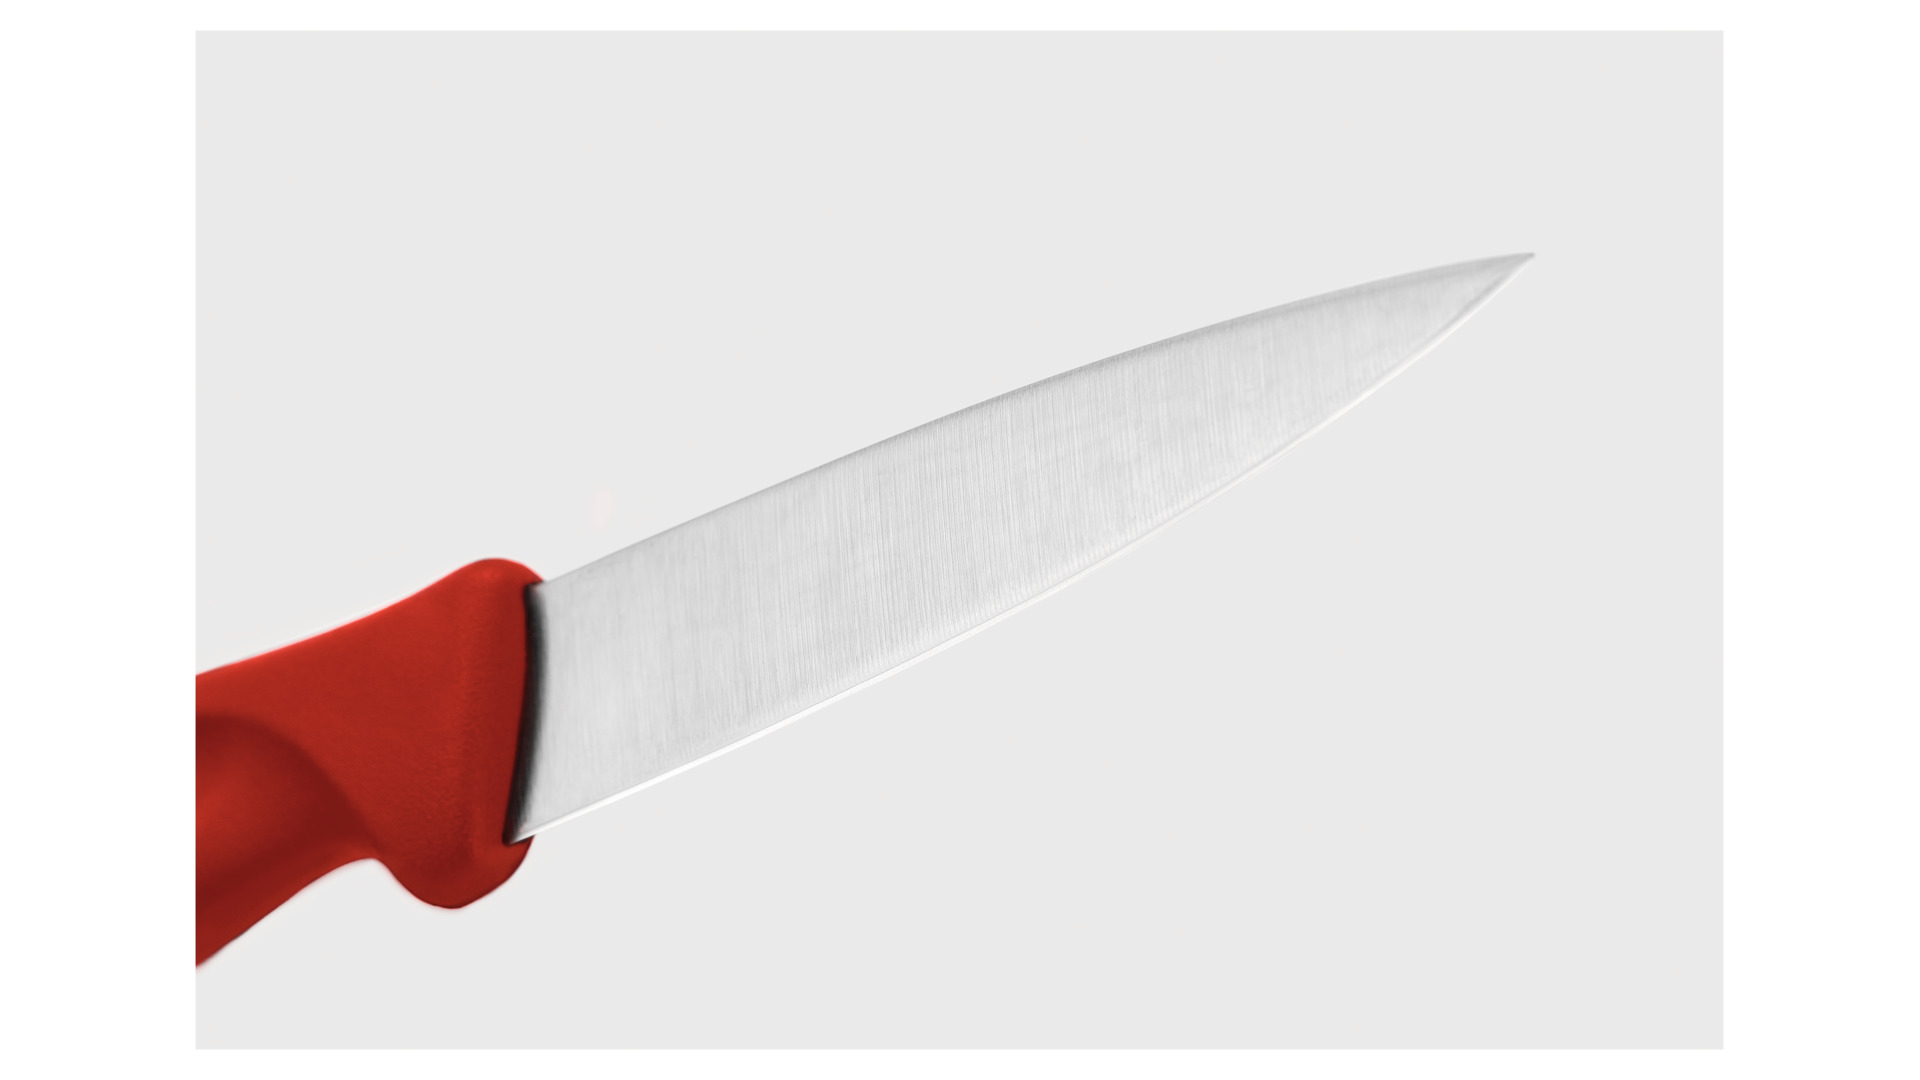 Нож для овощей WUESTHOF Create Collection 8см, красная рукоятка